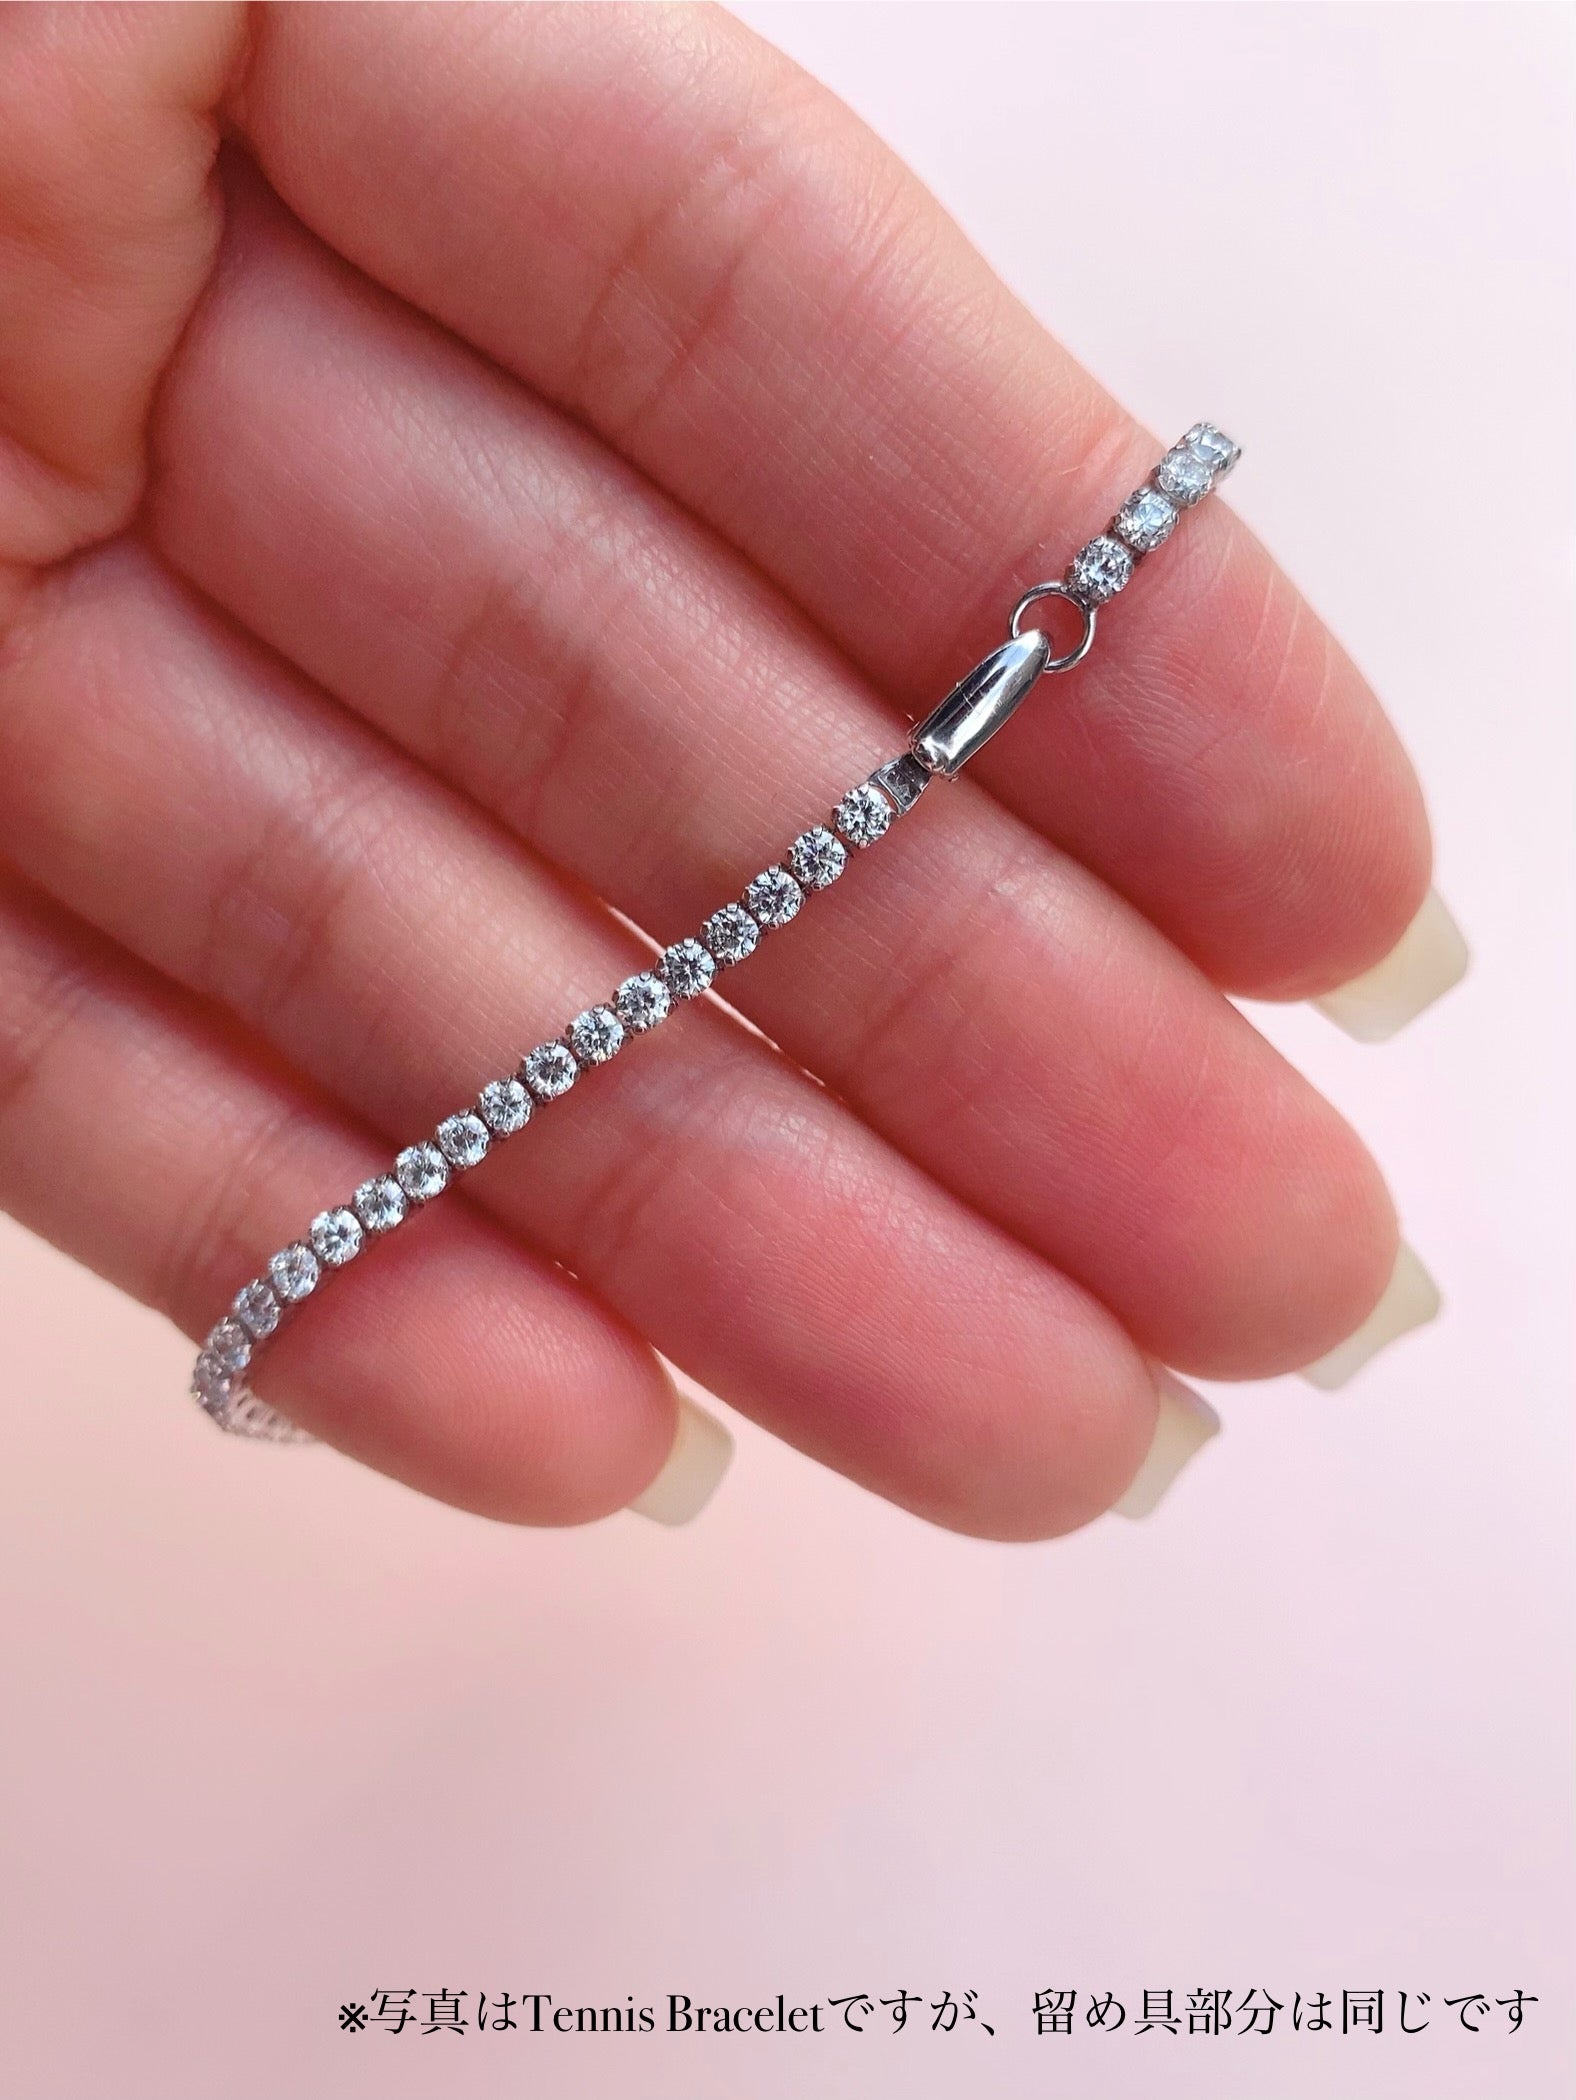 Mini Tennis Bracelet (~2ct) | ラボグロウンダイヤモンド テニスブレスレット